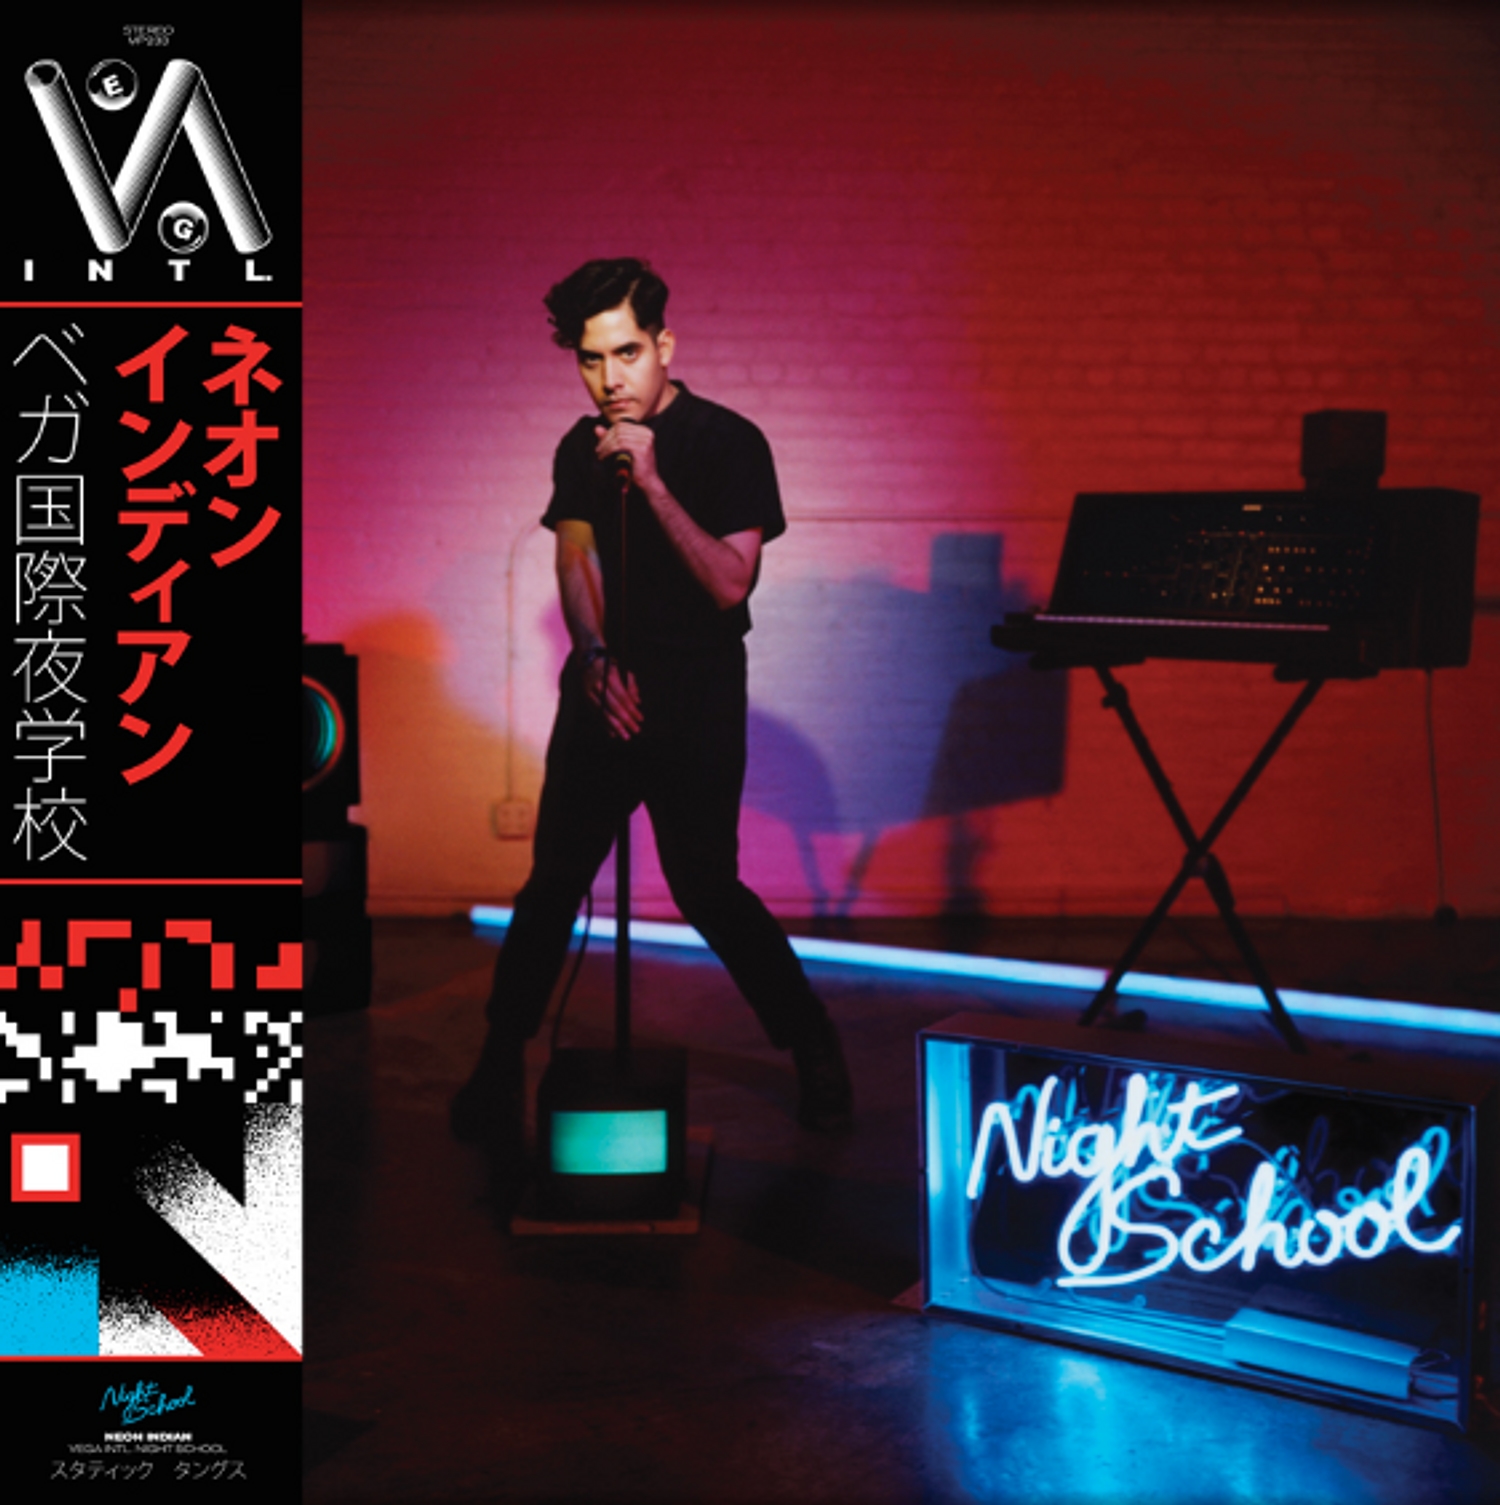 Neon indian announces ‘VEGA INTL. Night School’ album, shares ‘Slumlord’